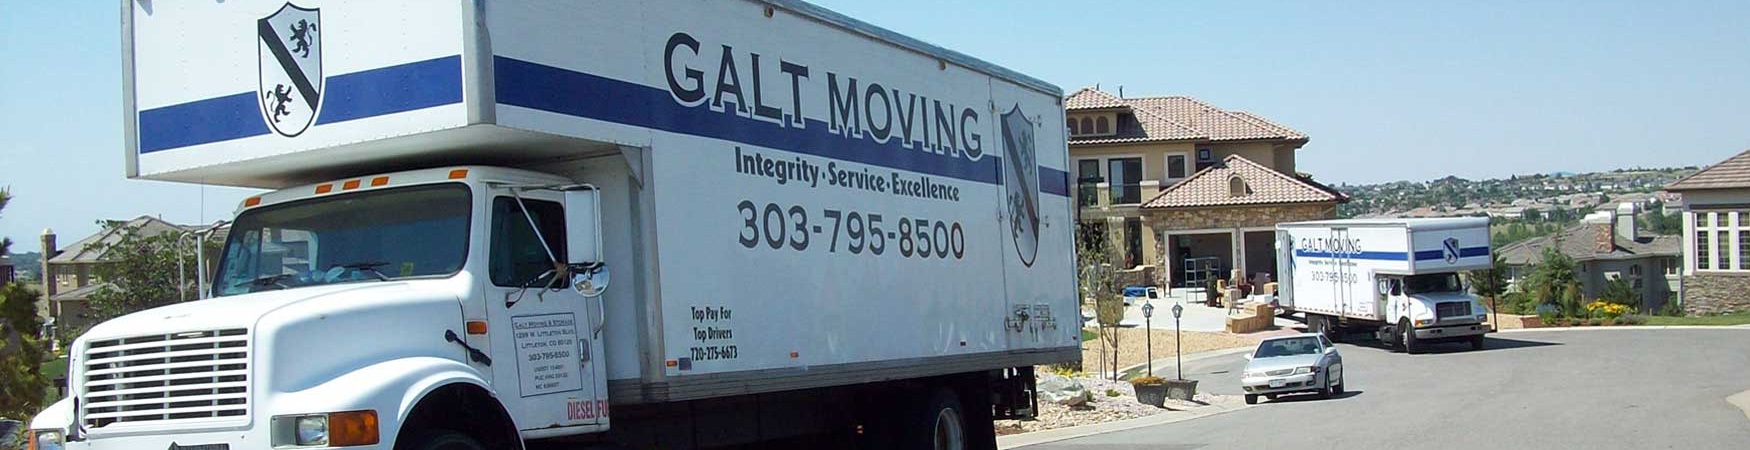 Galt Moving reviews | 1299 W Littleton Blvd. - Littleton CO